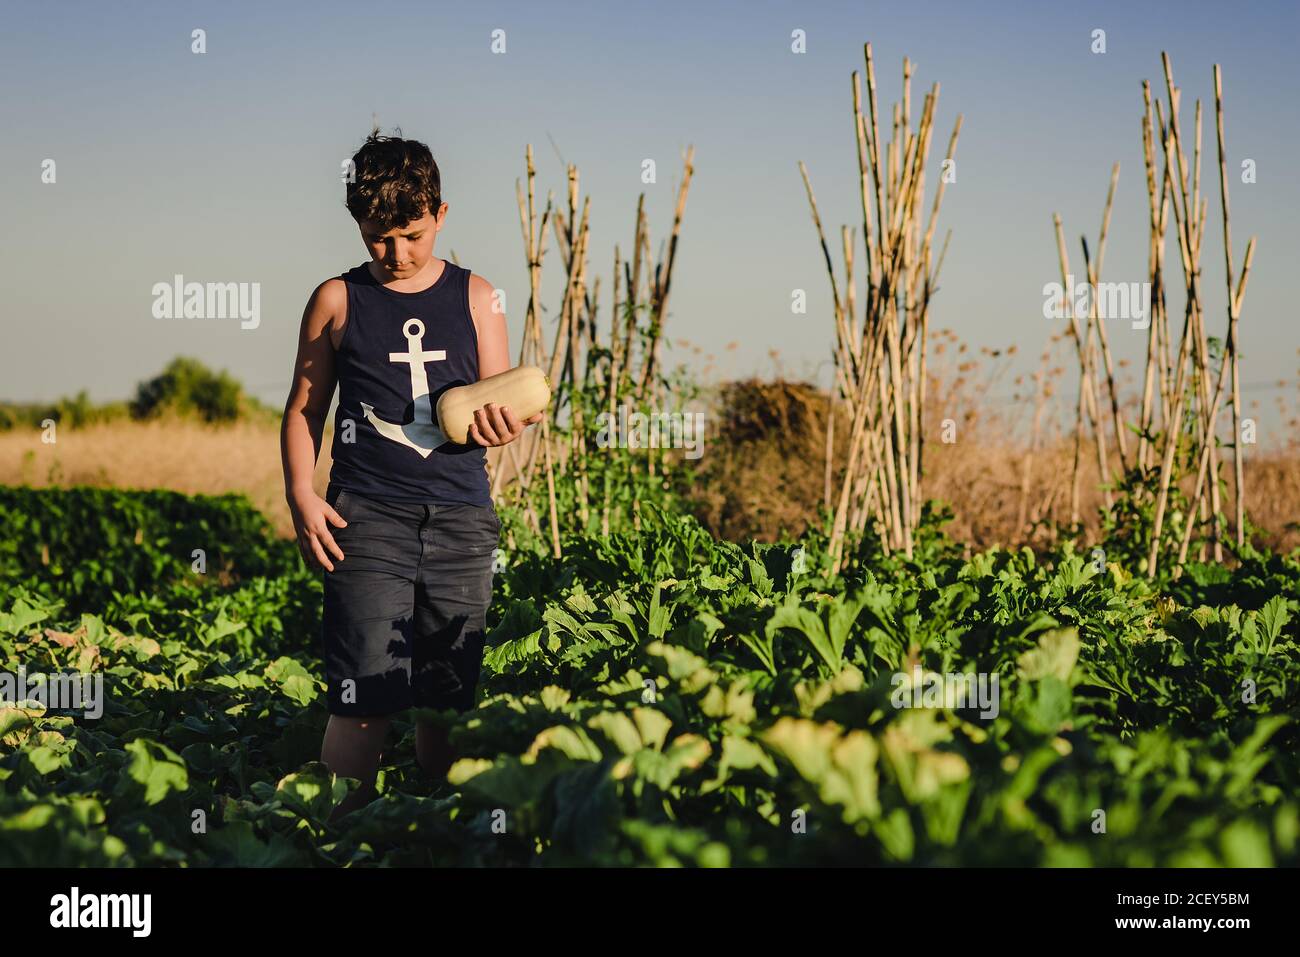 Presteen ragazzo con squash che cammina tra le piante verdi in estate campo agricolo Foto Stock